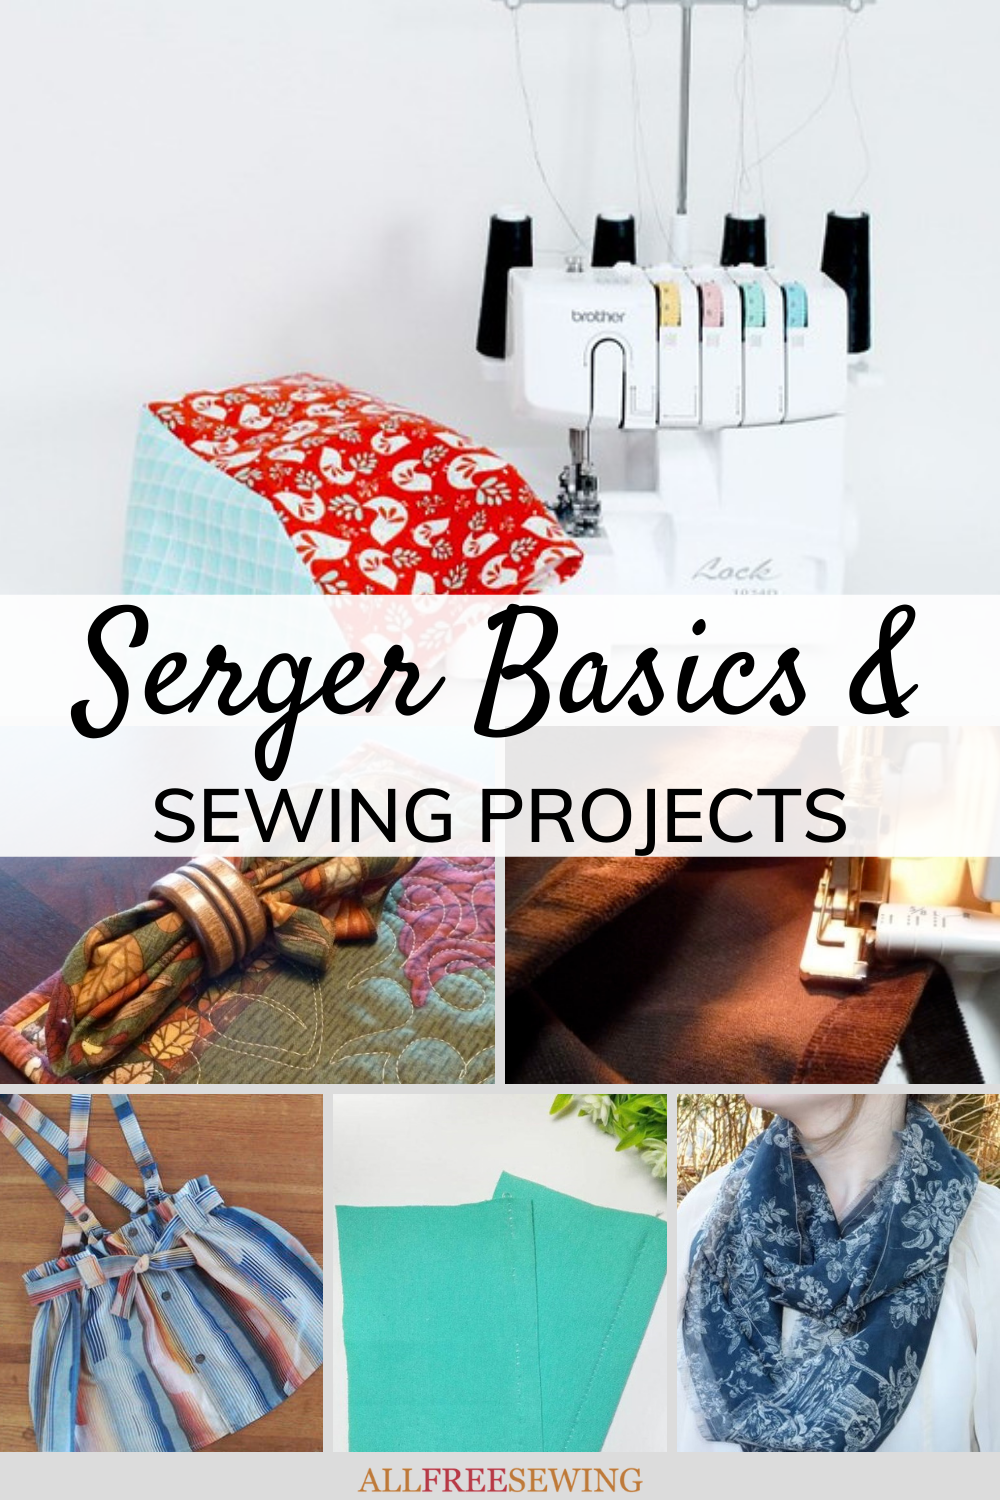 Make It Handmade: Understanding Your Serger's Features